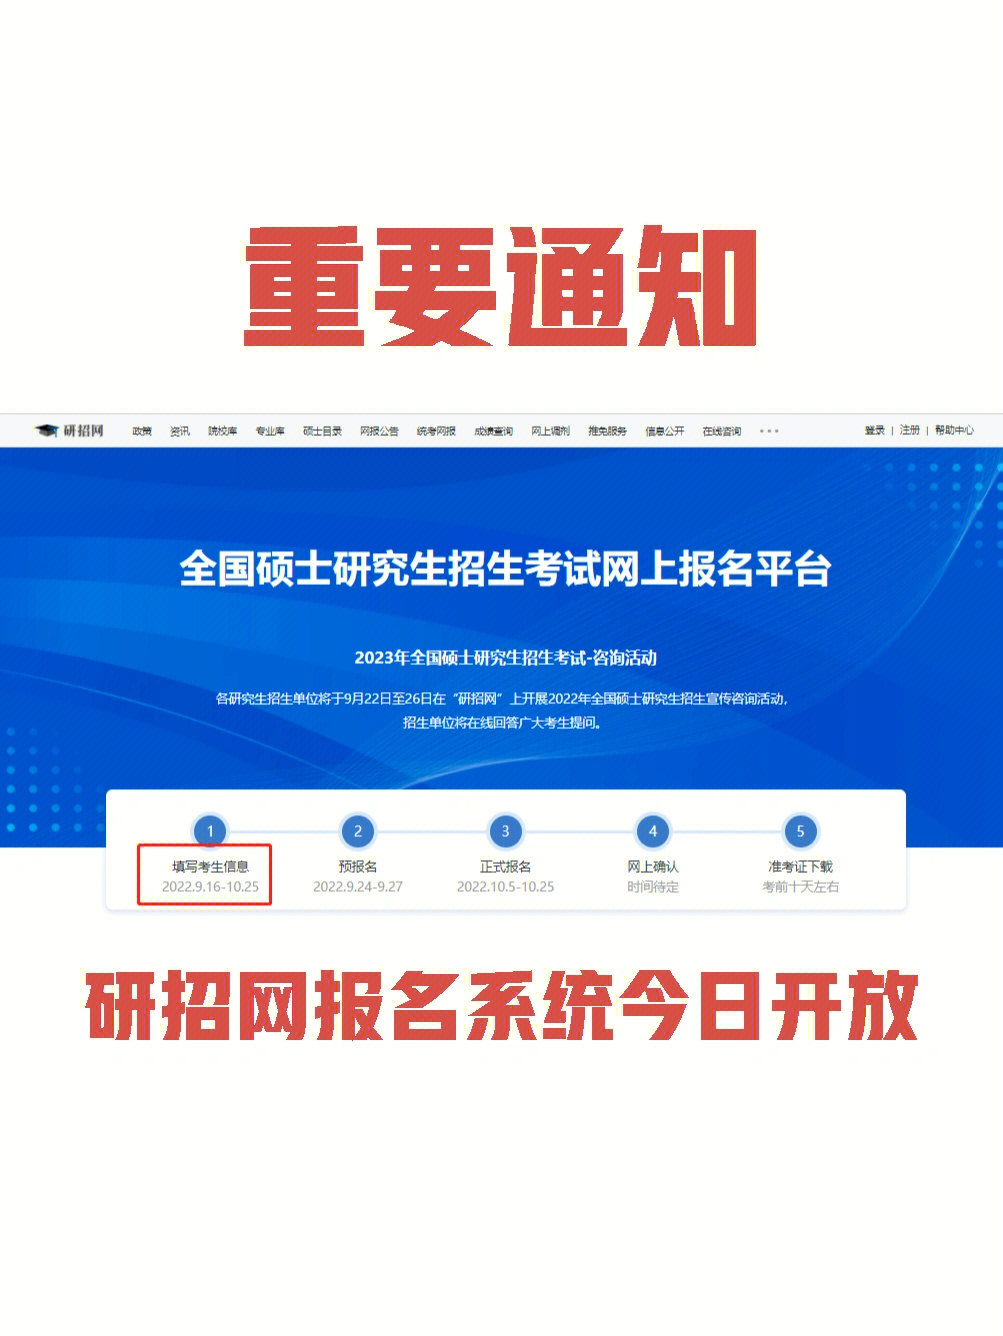 中国研究生招生信息网浏览报考须知,并按教育部,省级教育招生考试